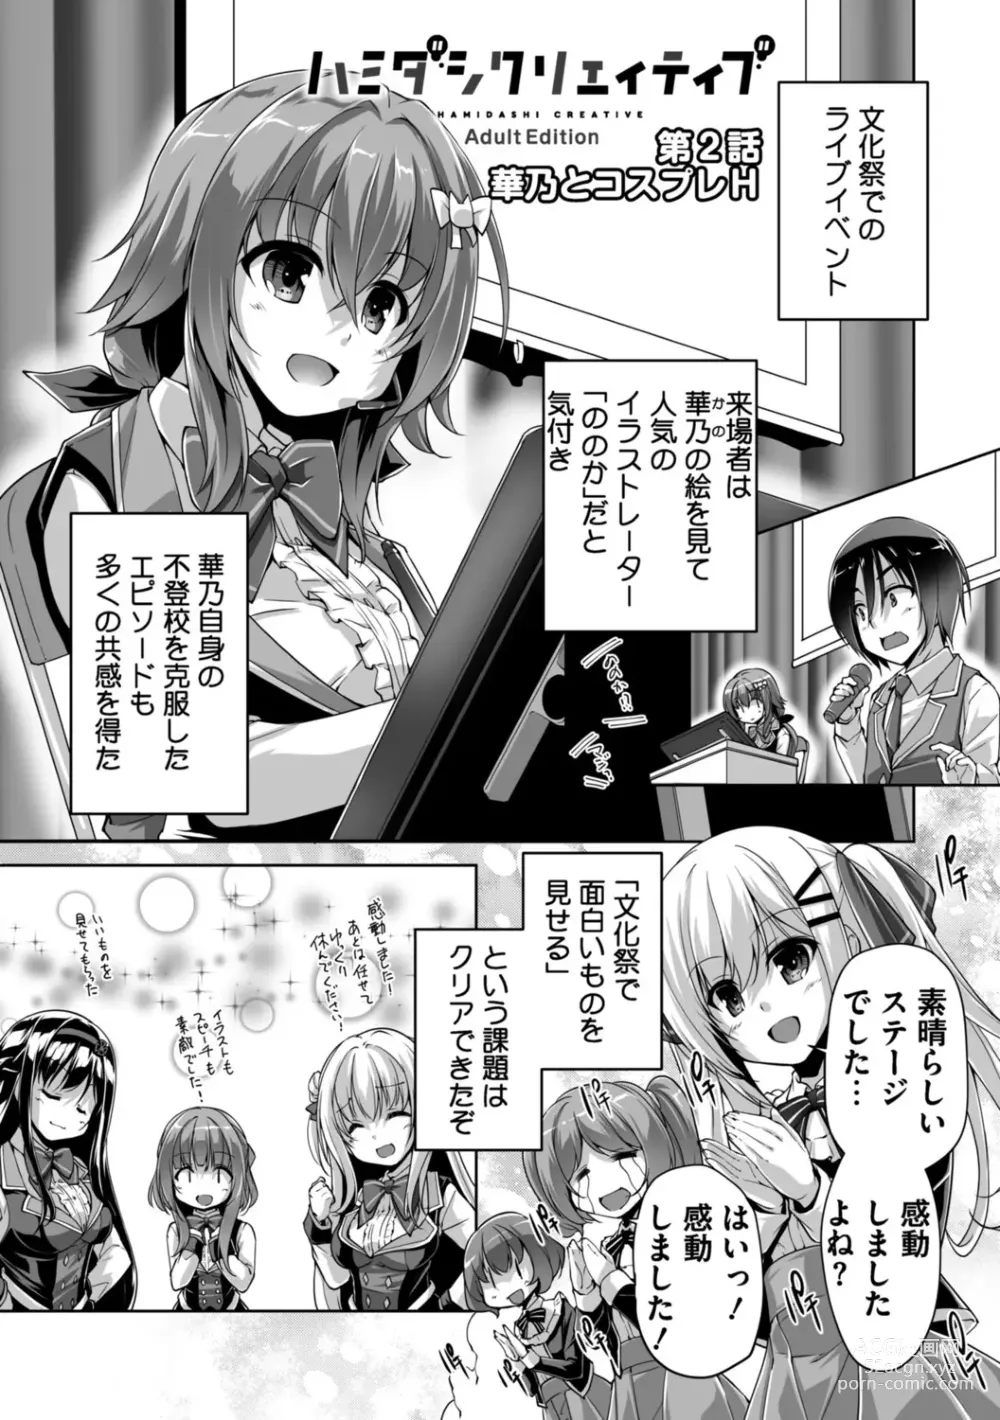 Page 25 of manga Hamidashi Creative Adult Edition